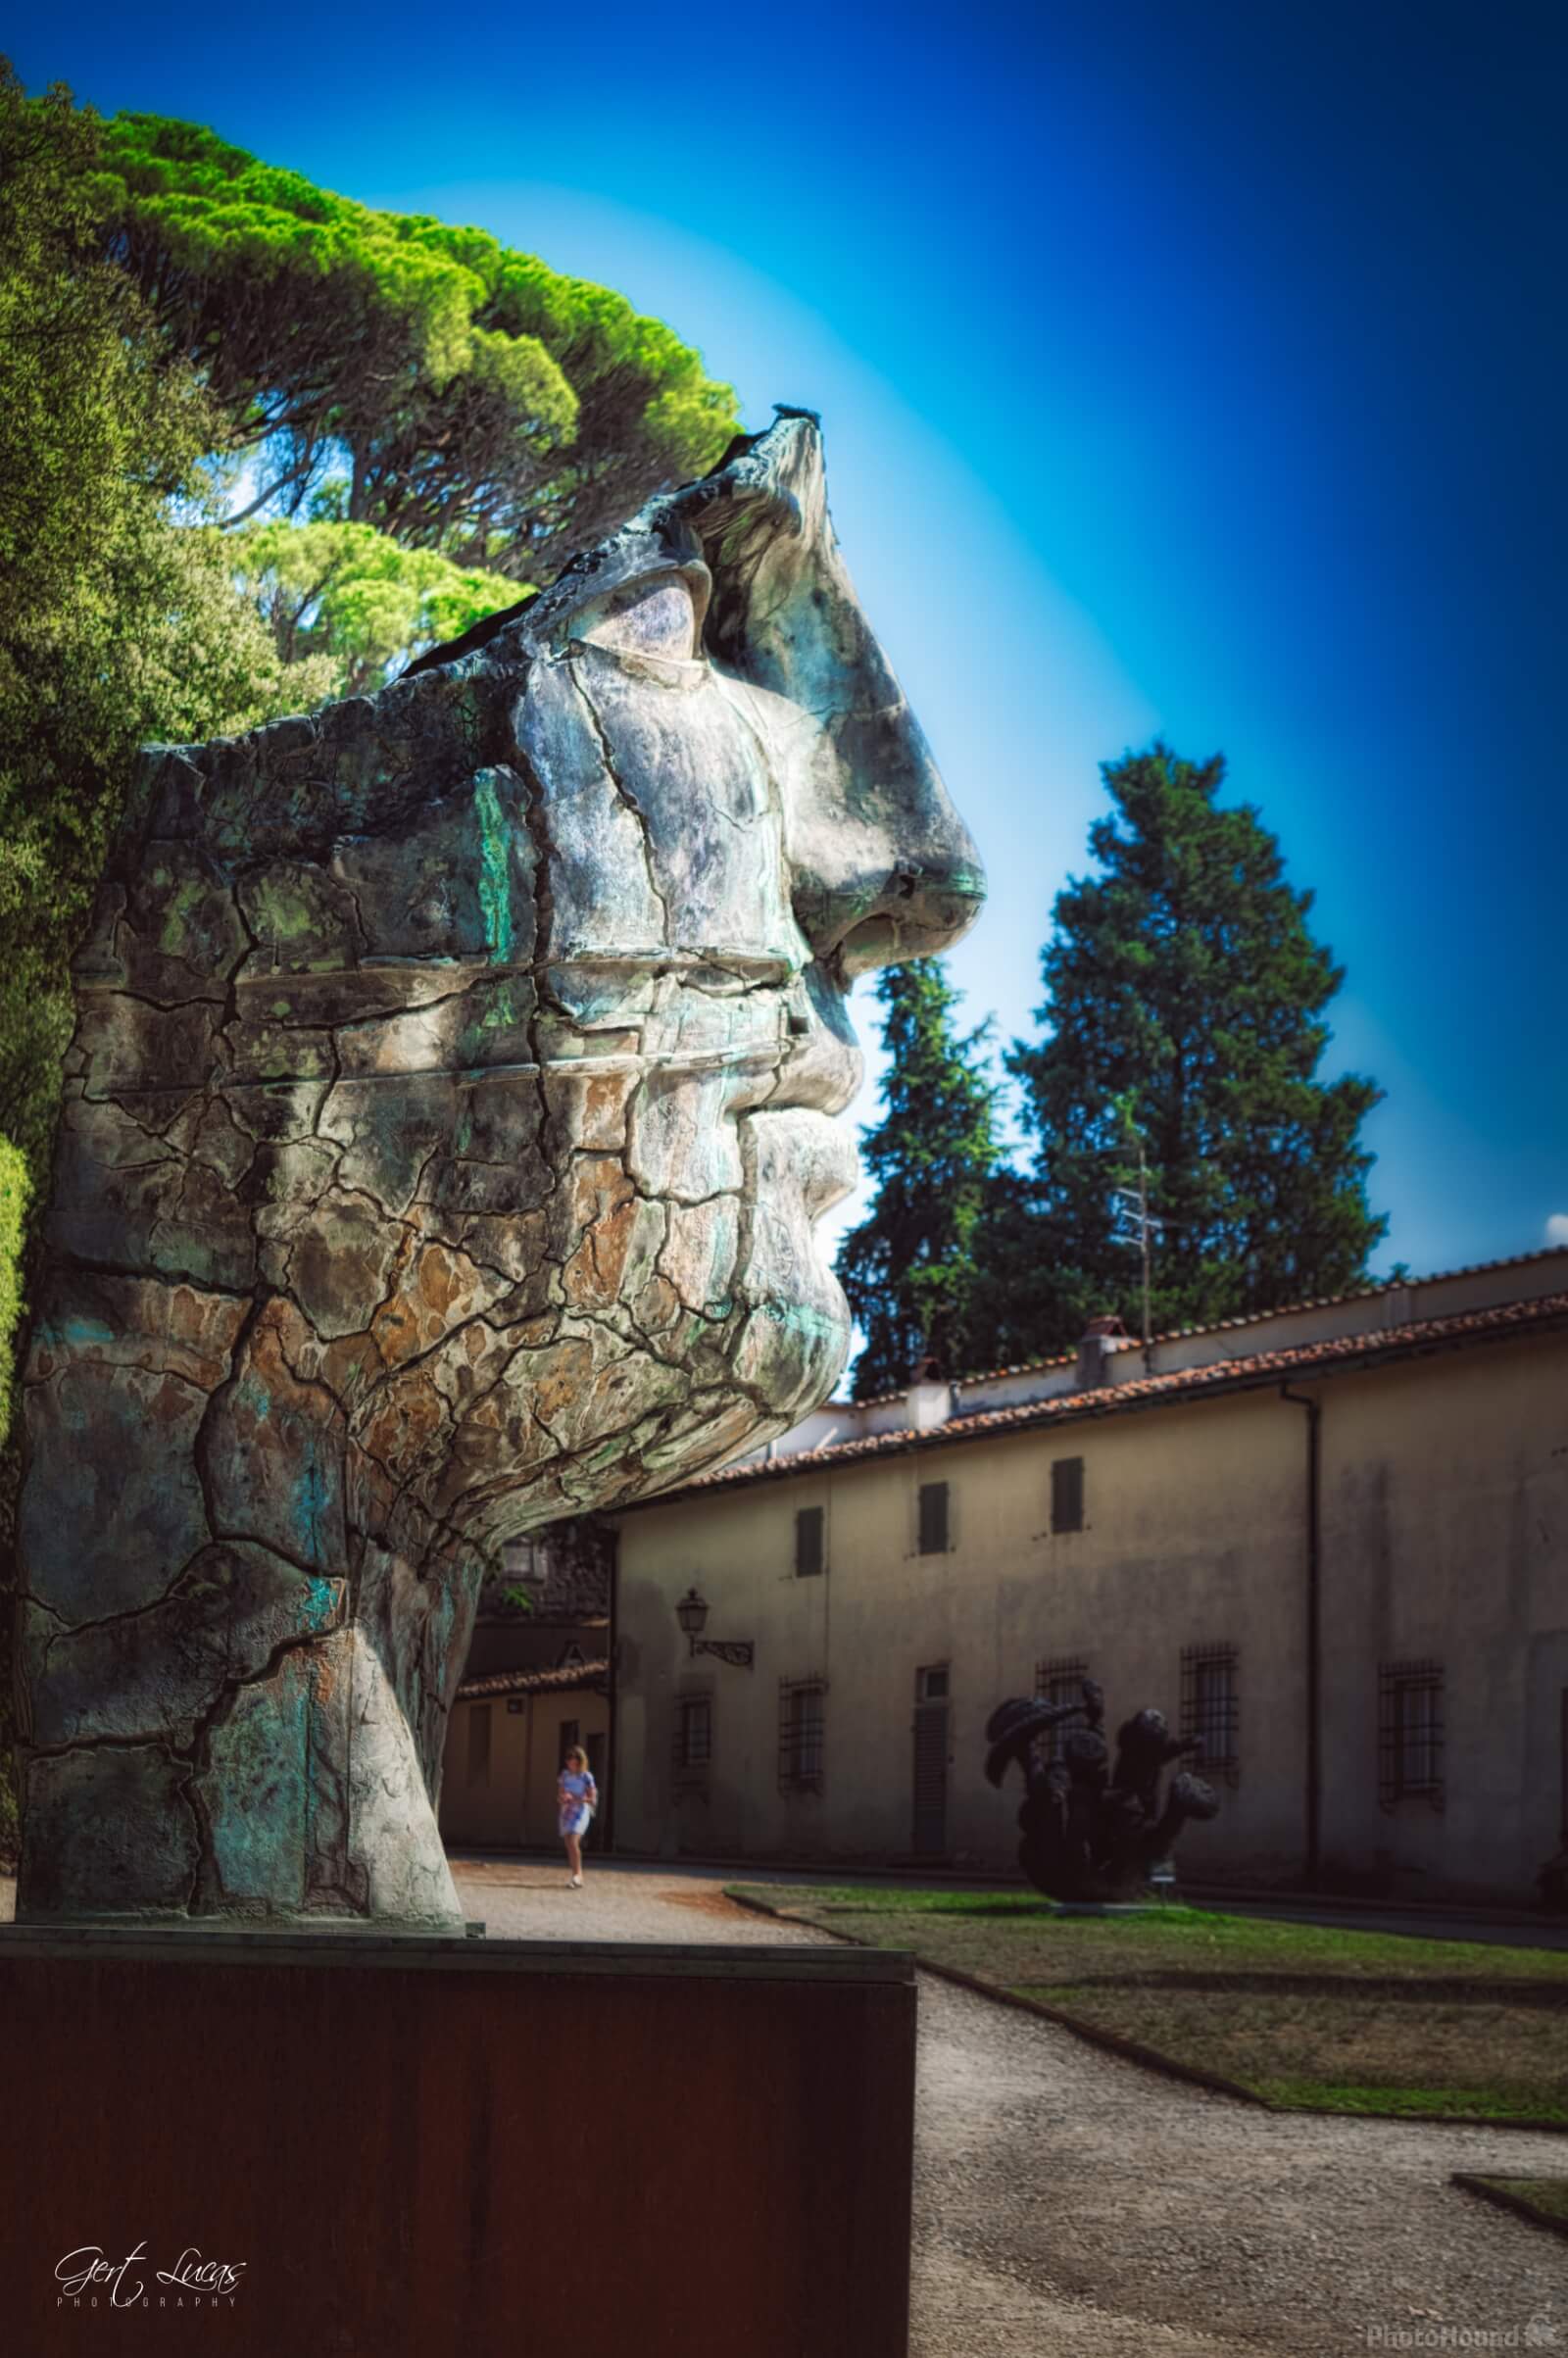 Image of Boboli Gardens, Firenze by Gert Lucas